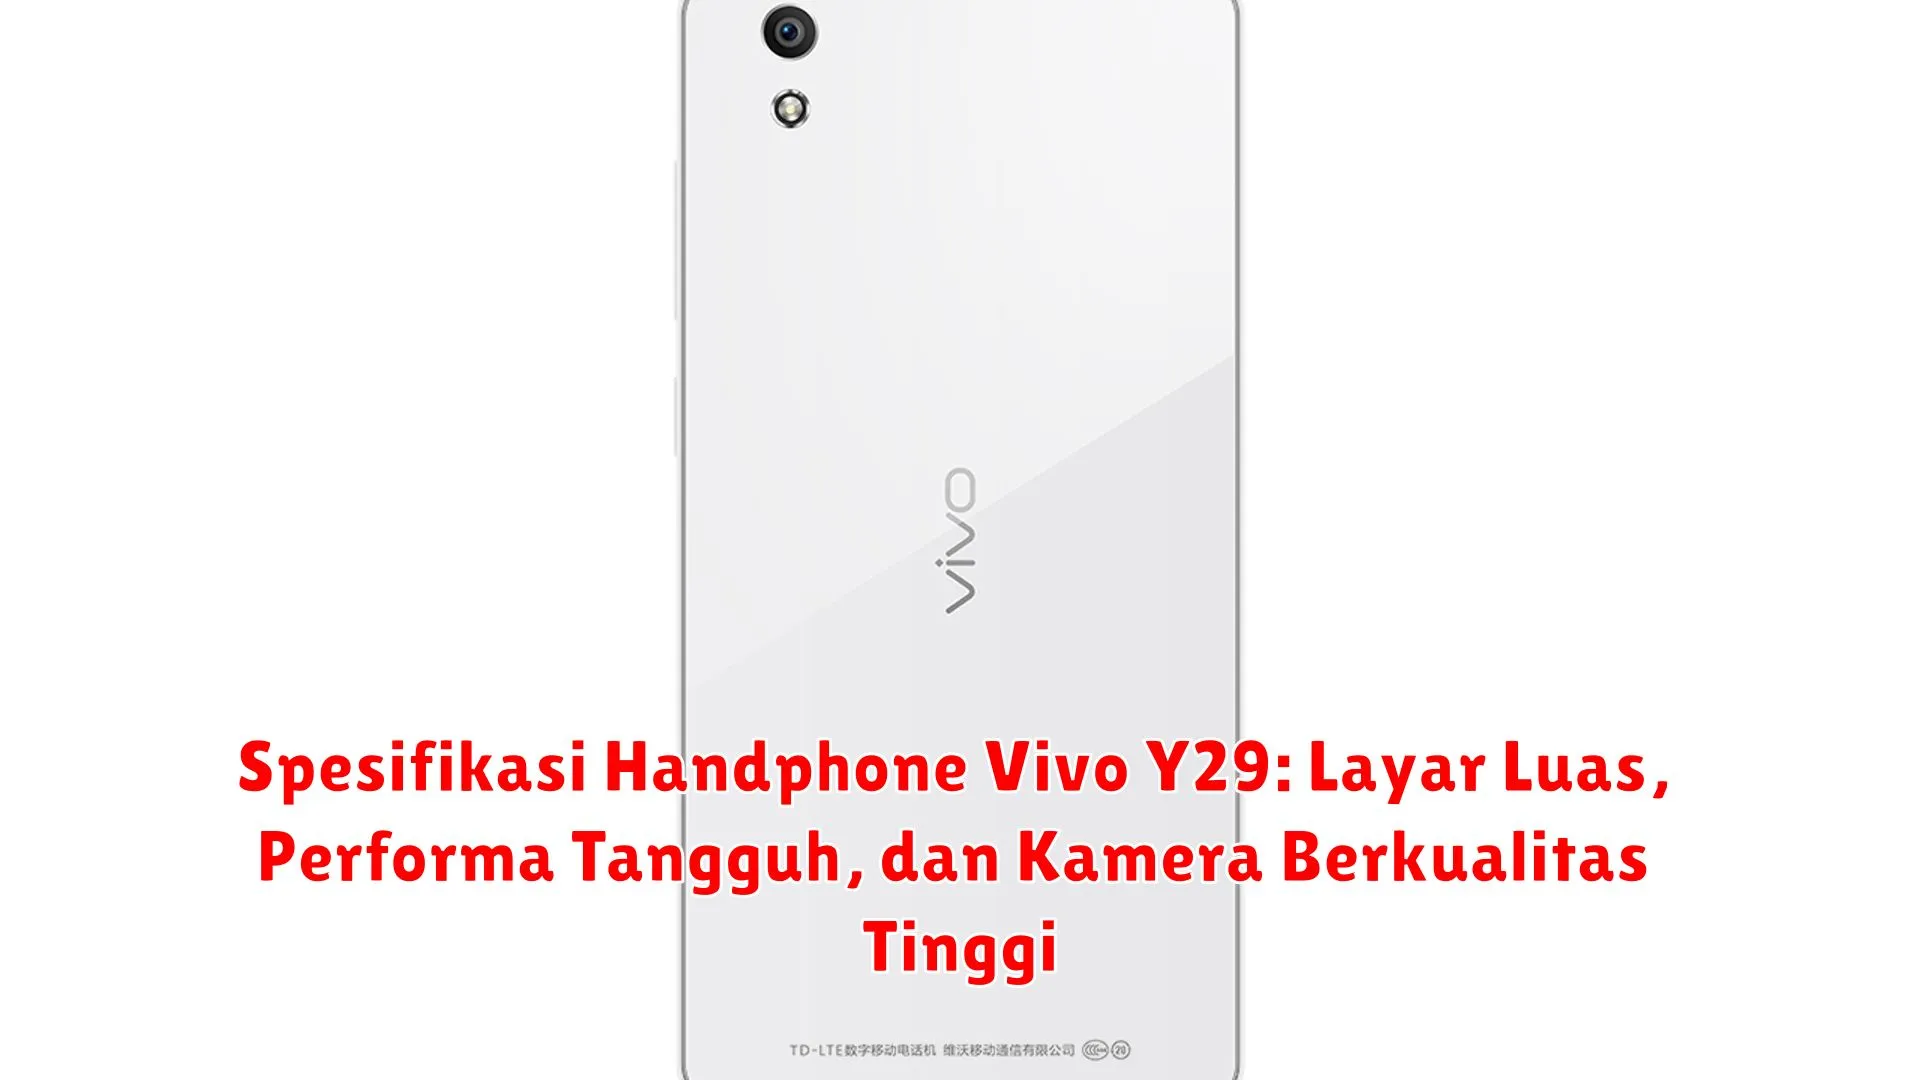 Spesifikasi Handphone Vivo Y29: Layar Luas, Performa Tangguh, dan Kamera Berkualitas Tinggi